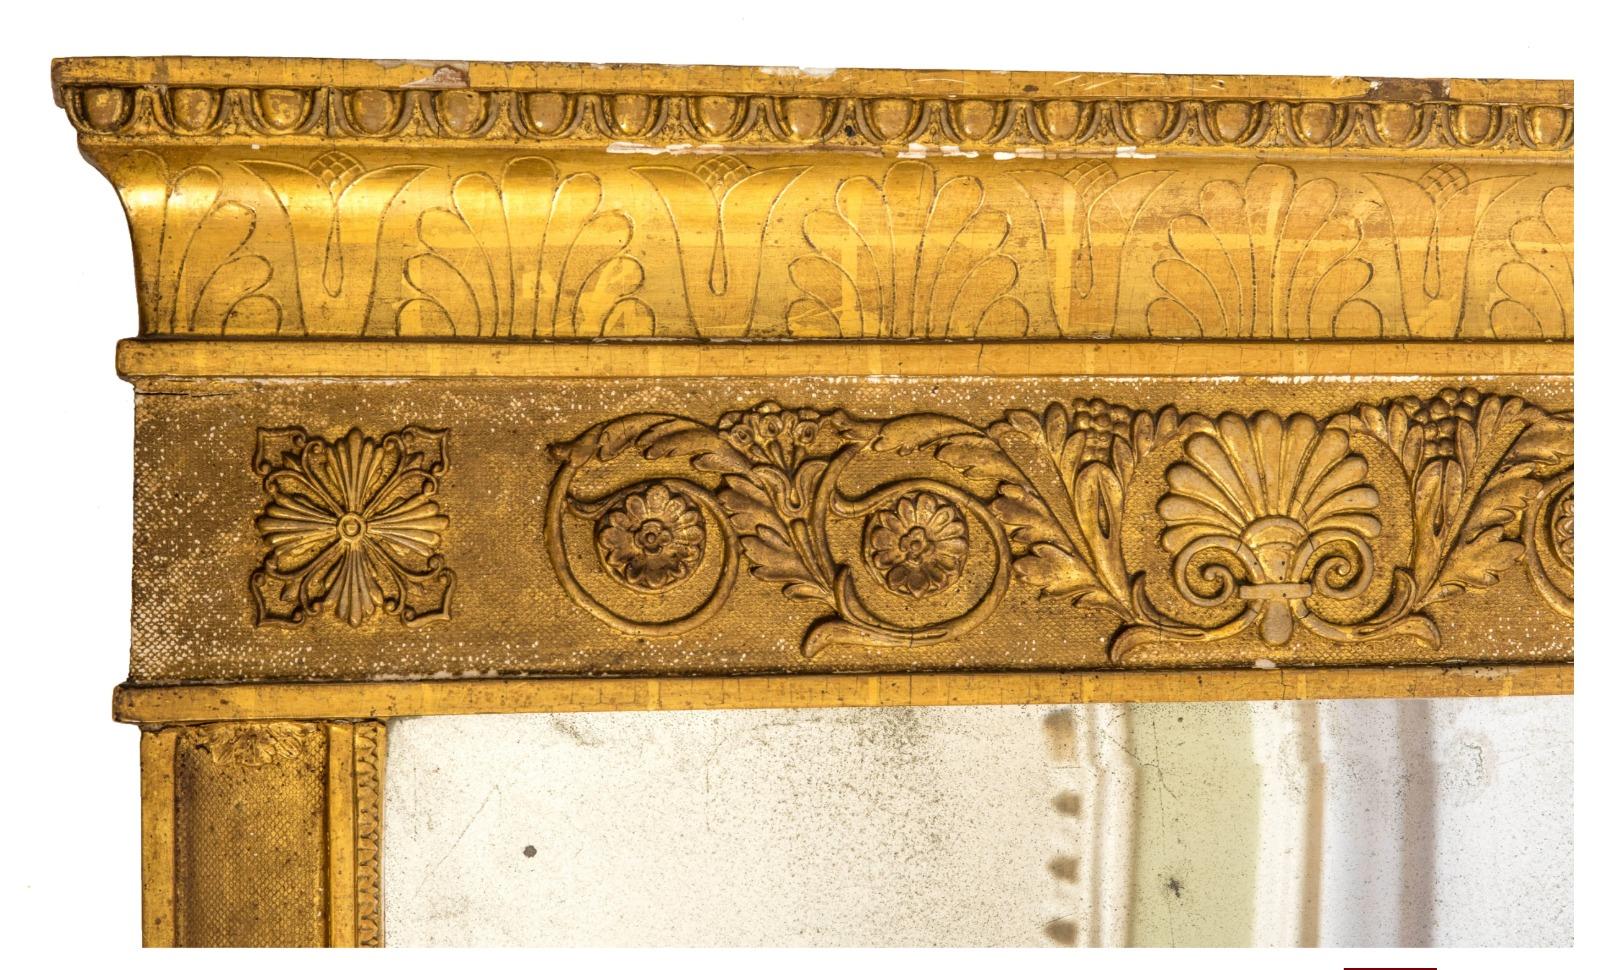 Miroir Empire Napoléon III 19ème siècle
Dorure sur tranche à la feuille d'or et motifs Empire, cygnes, rosaces. 
Miroir d'époque taillé à la main. 
115x69cm
bonne condition